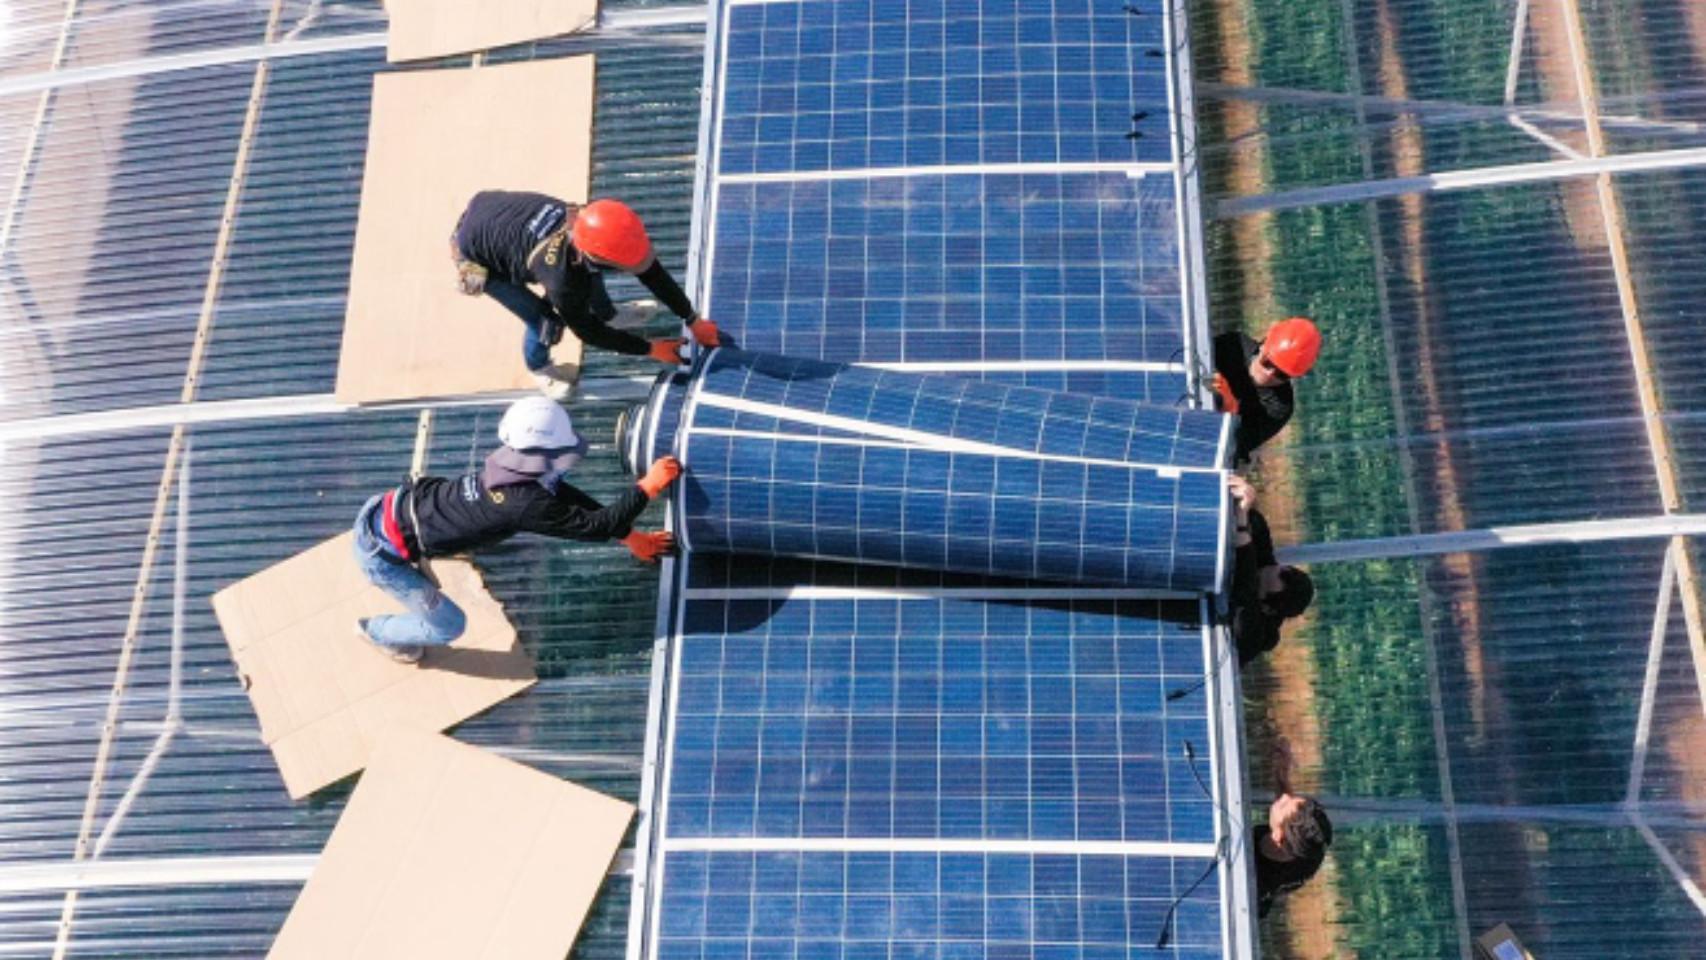 Las ingeniosas placas solares que se doblan y generan energía barata en  cualquier superficie